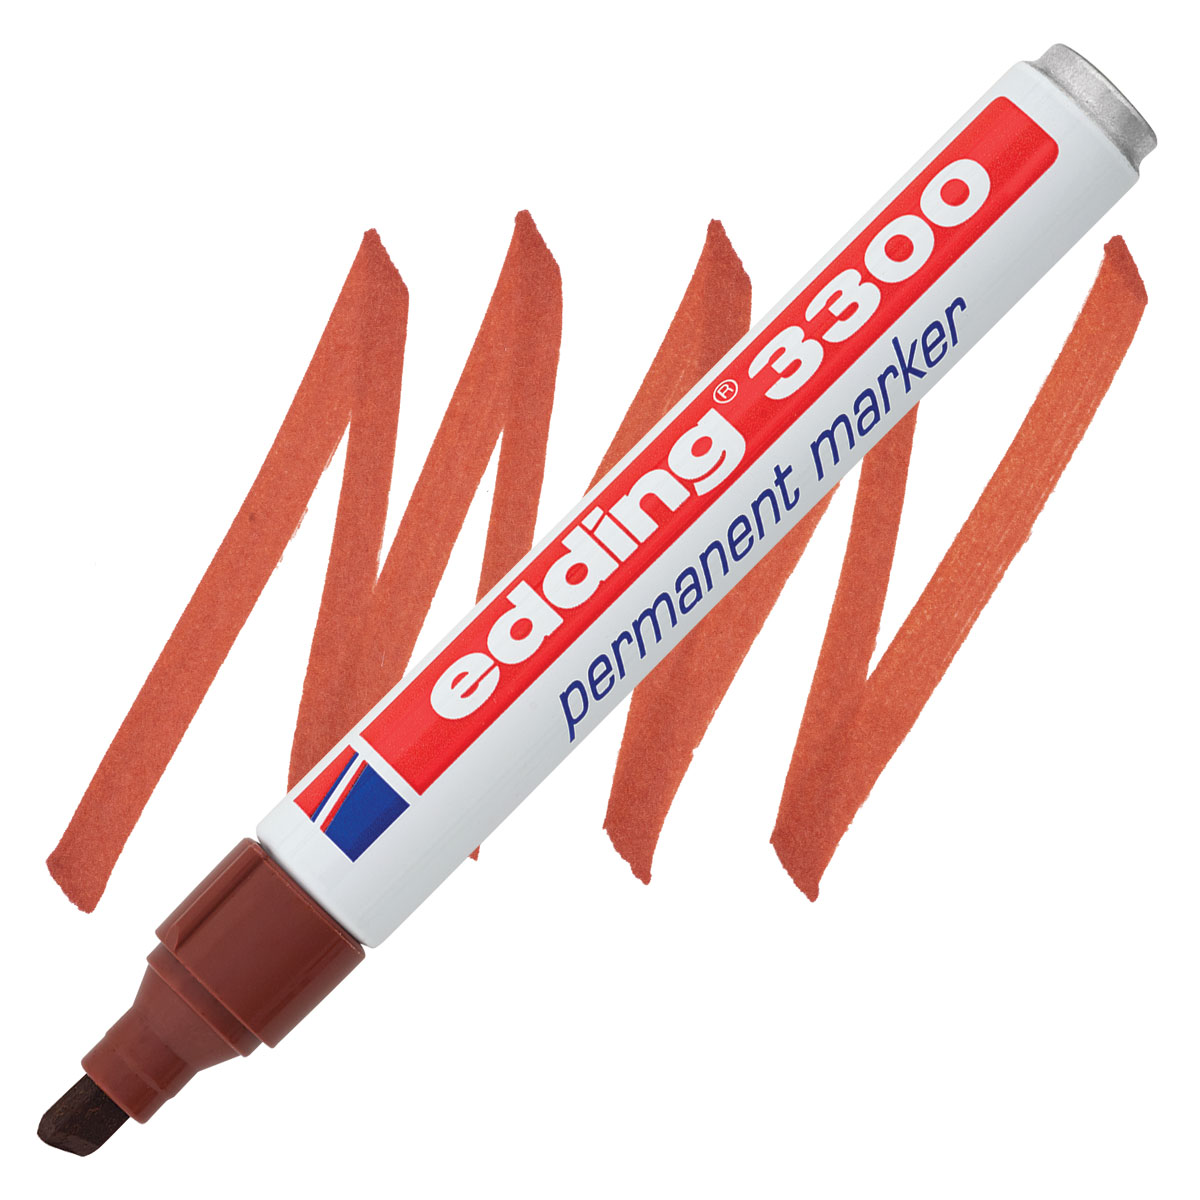 Edding Permanent Marker - Dark Brown, 3000, Bullet Nib